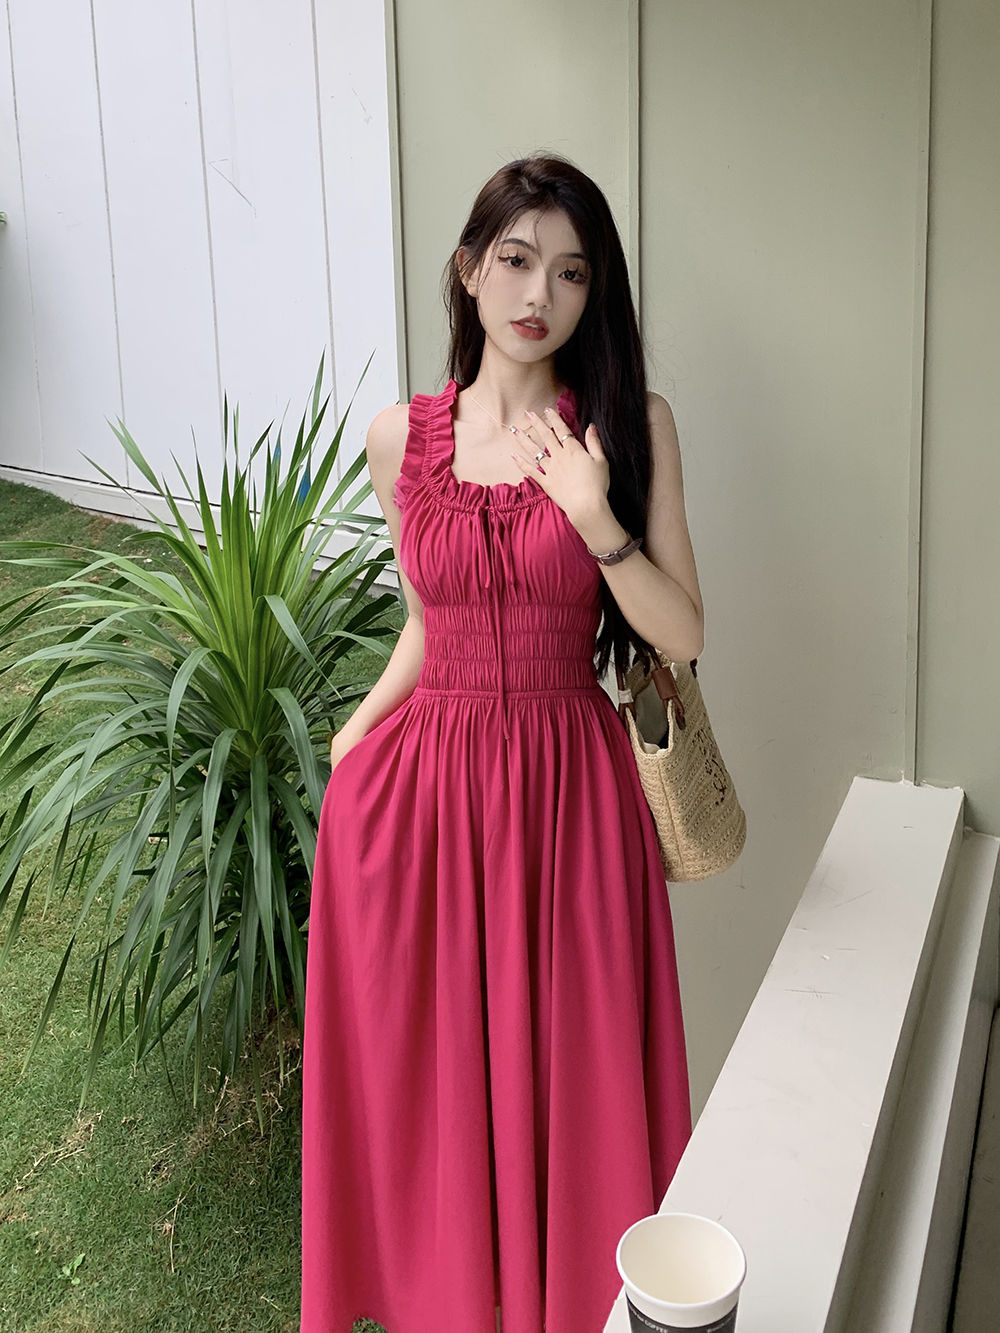 筱姿法式复古吊带连衣裙女装玫红色裙子收腰显瘦气质系带褶皱长裙